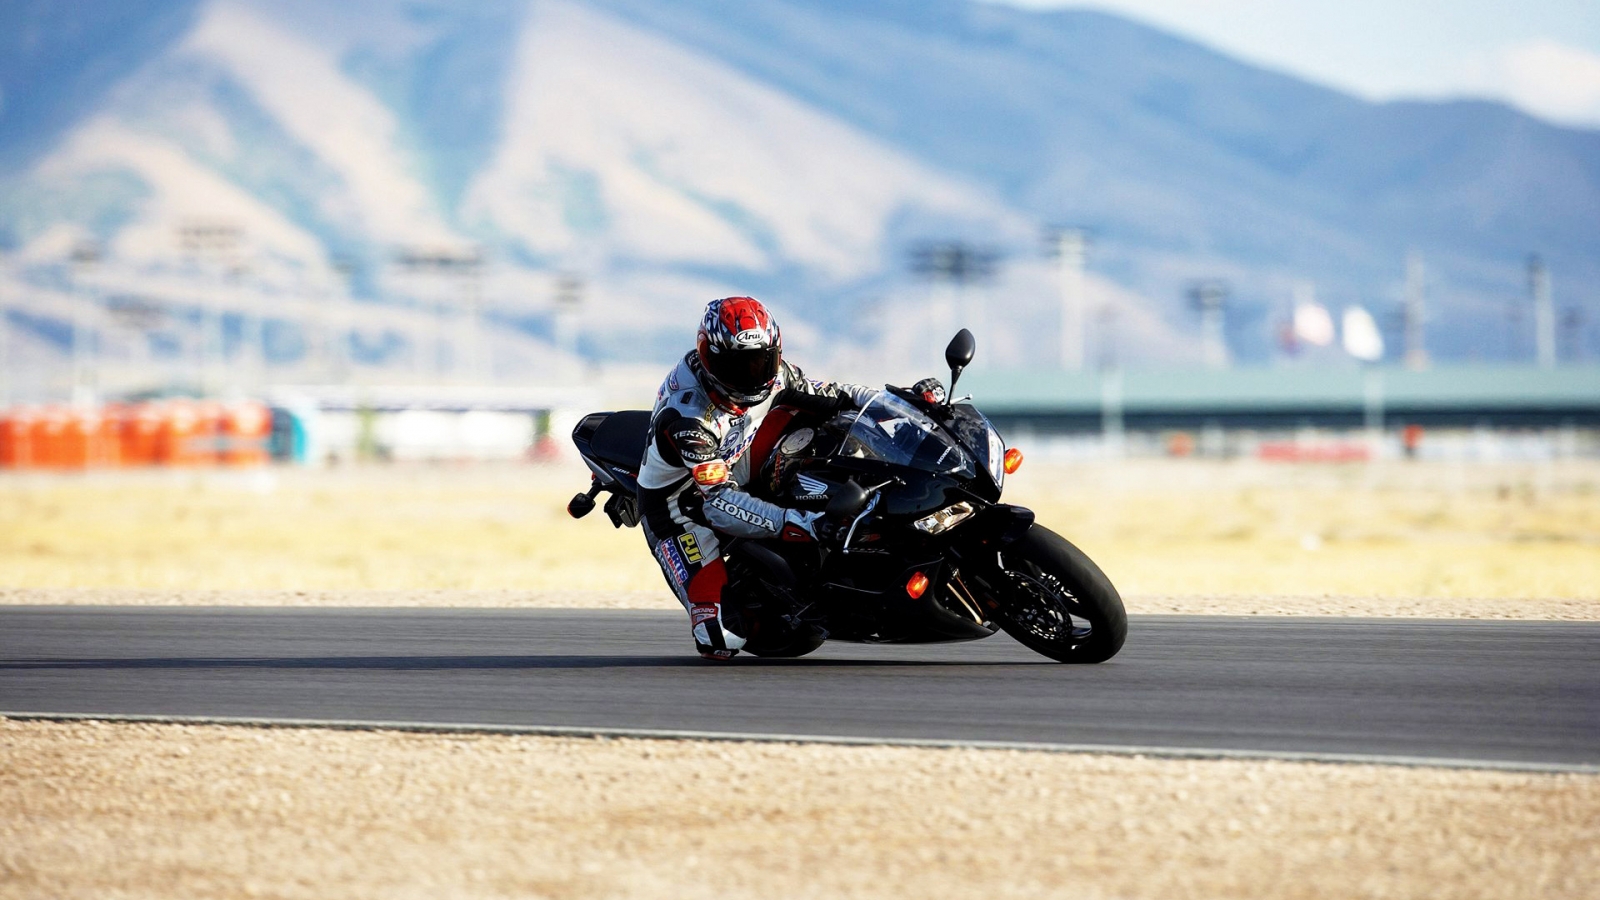 Moto Race for 1600 x 900 HDTV resolution